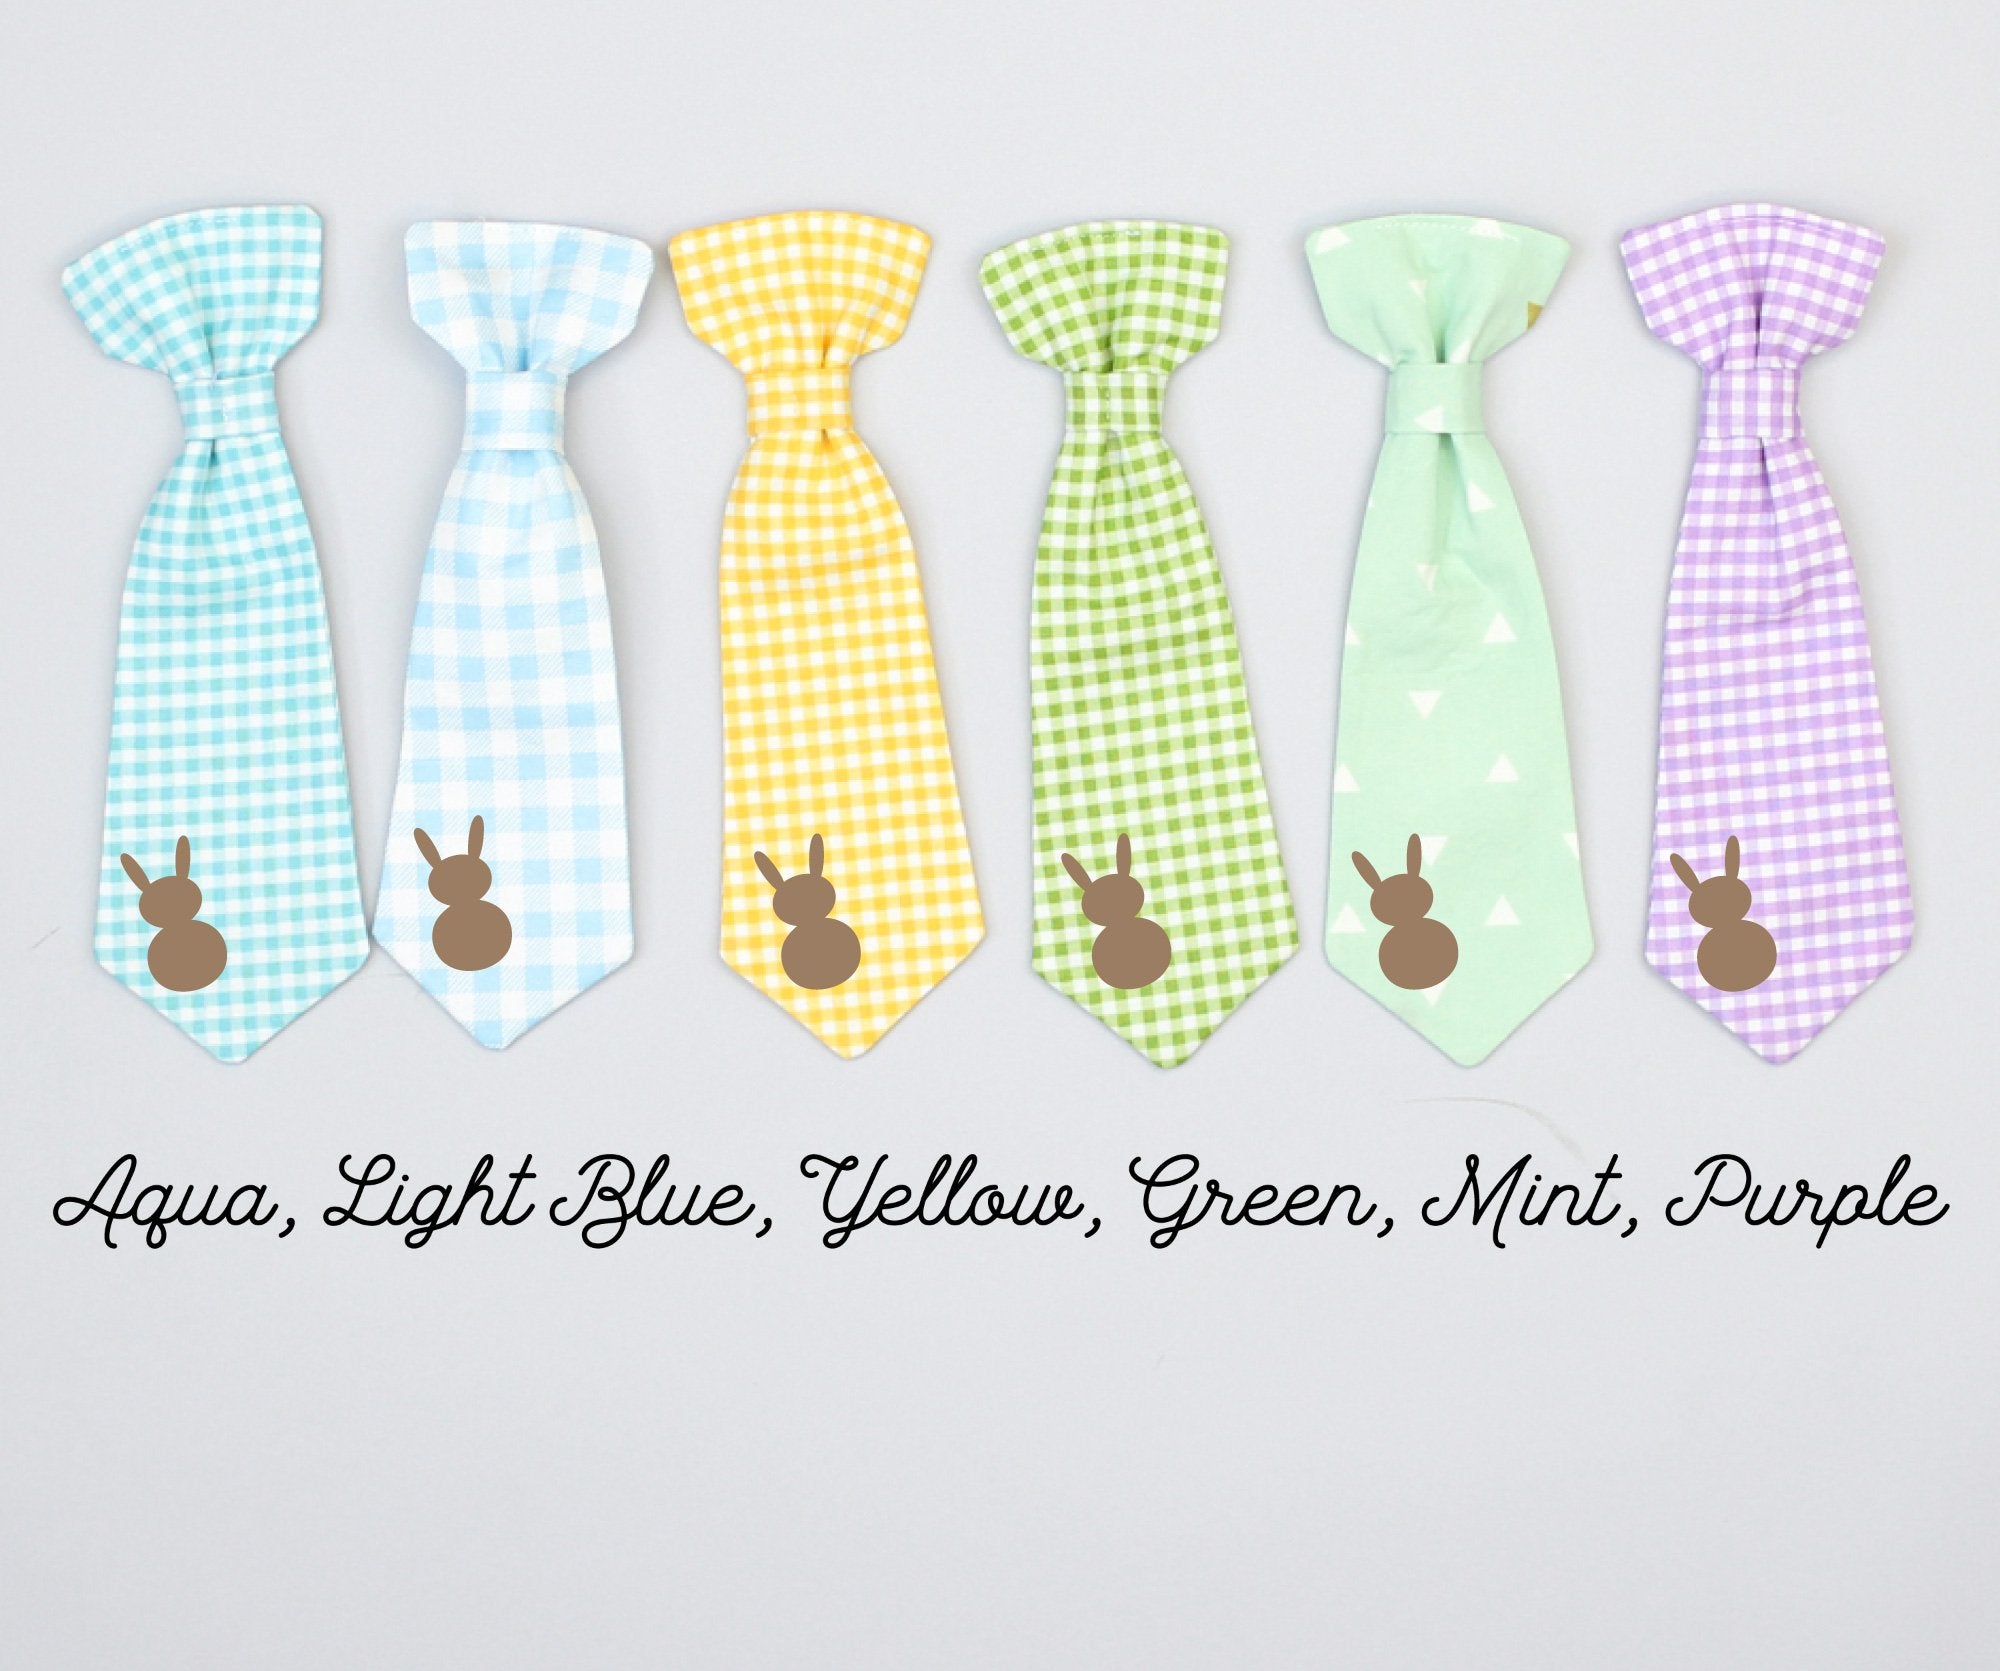 Cuddle Sleep Dream Ties Easter Bunny Snap-On Neckties